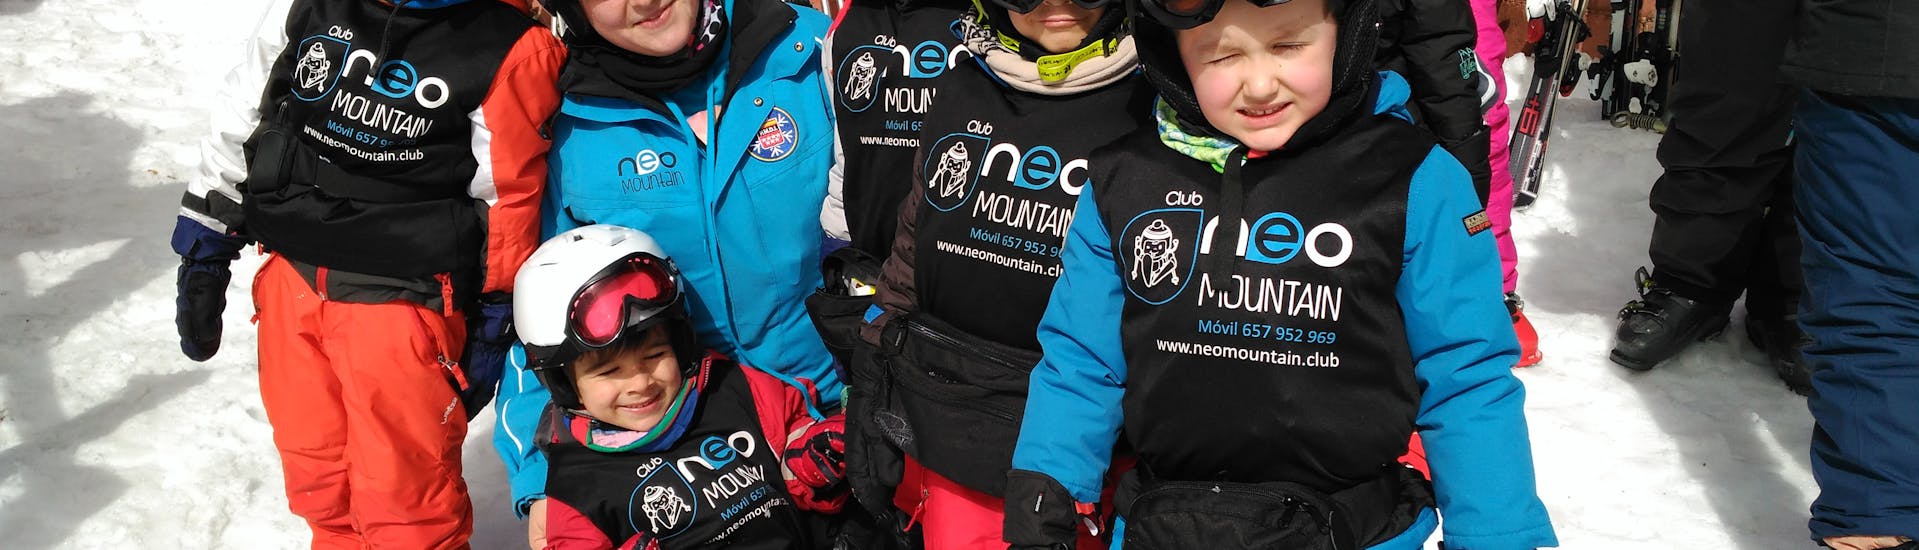 Cours de ski Enfants dès 4 ans pour Débutants.